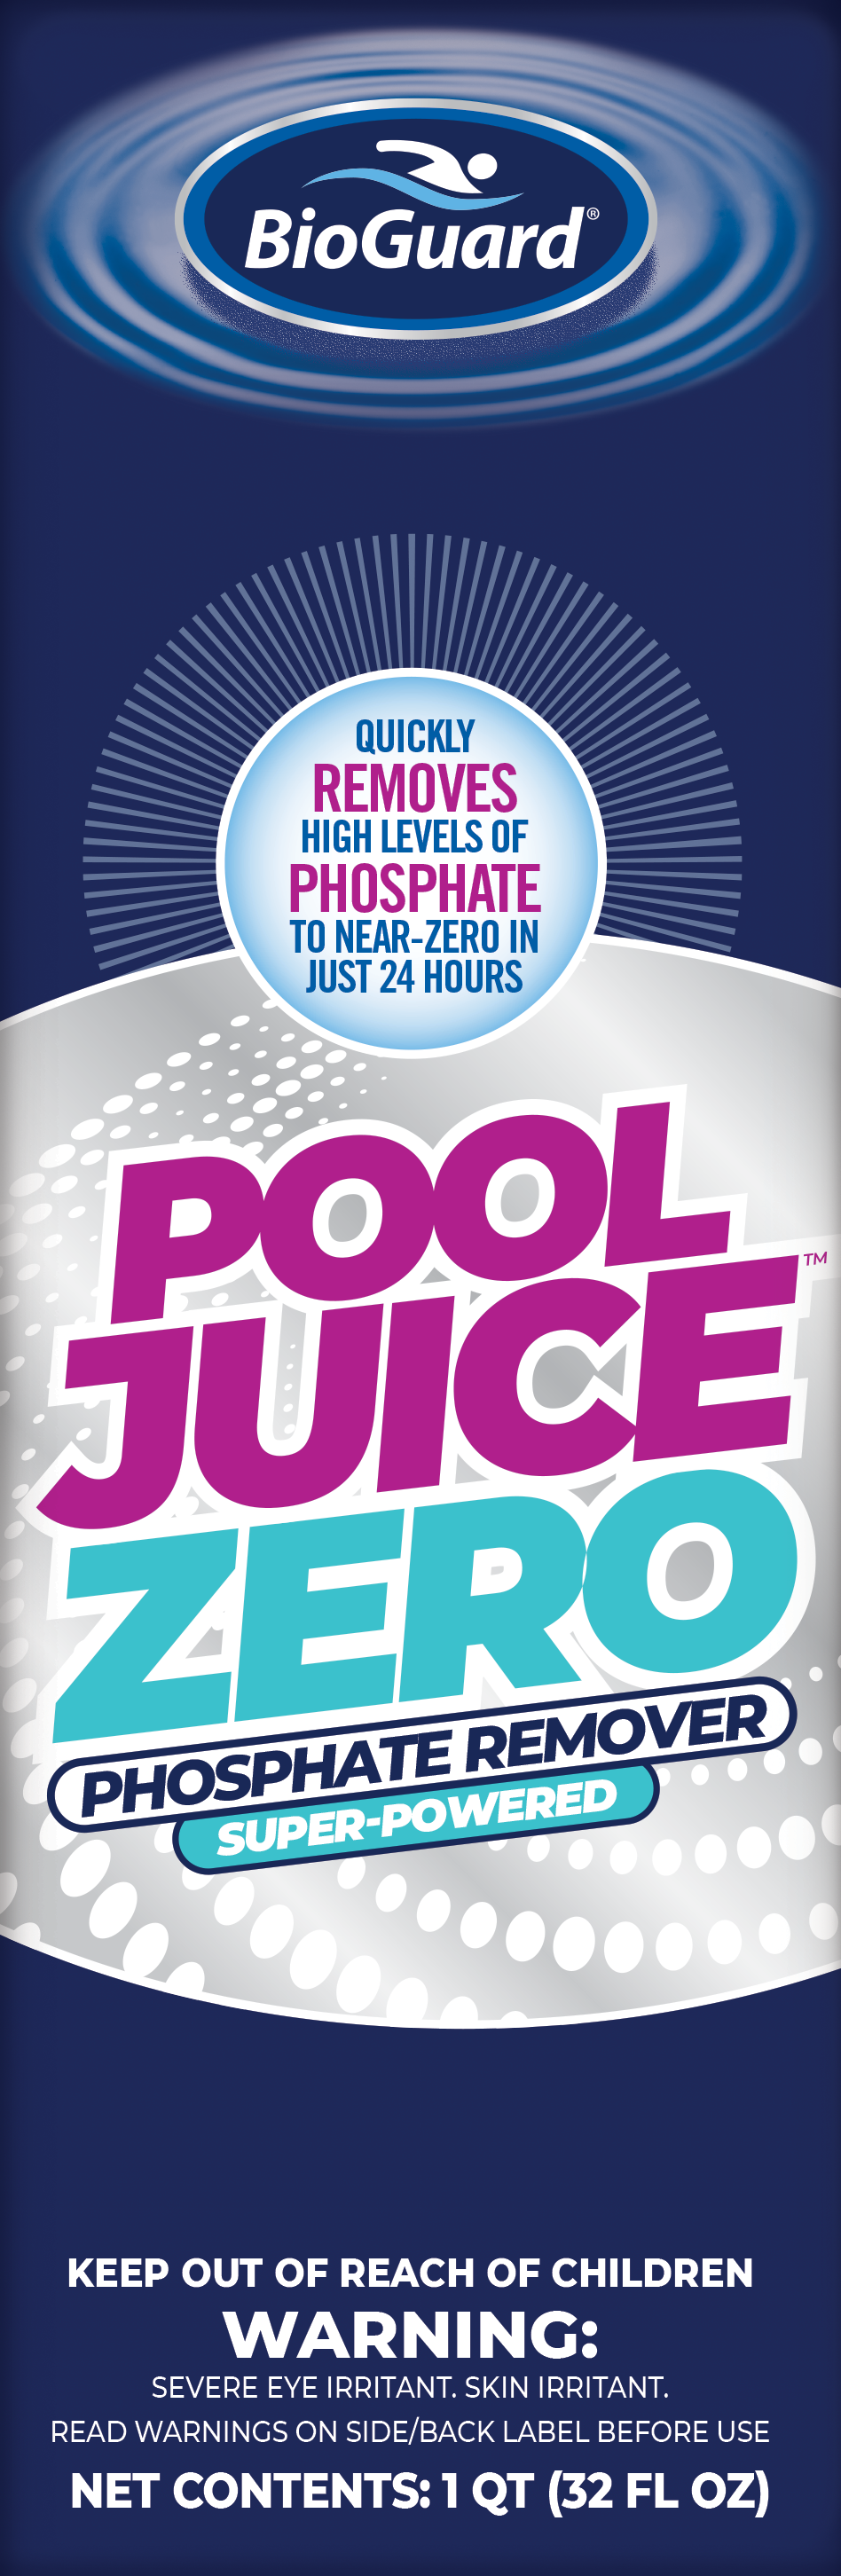 Pool Juice Zero Phosphate Remover 1qt.